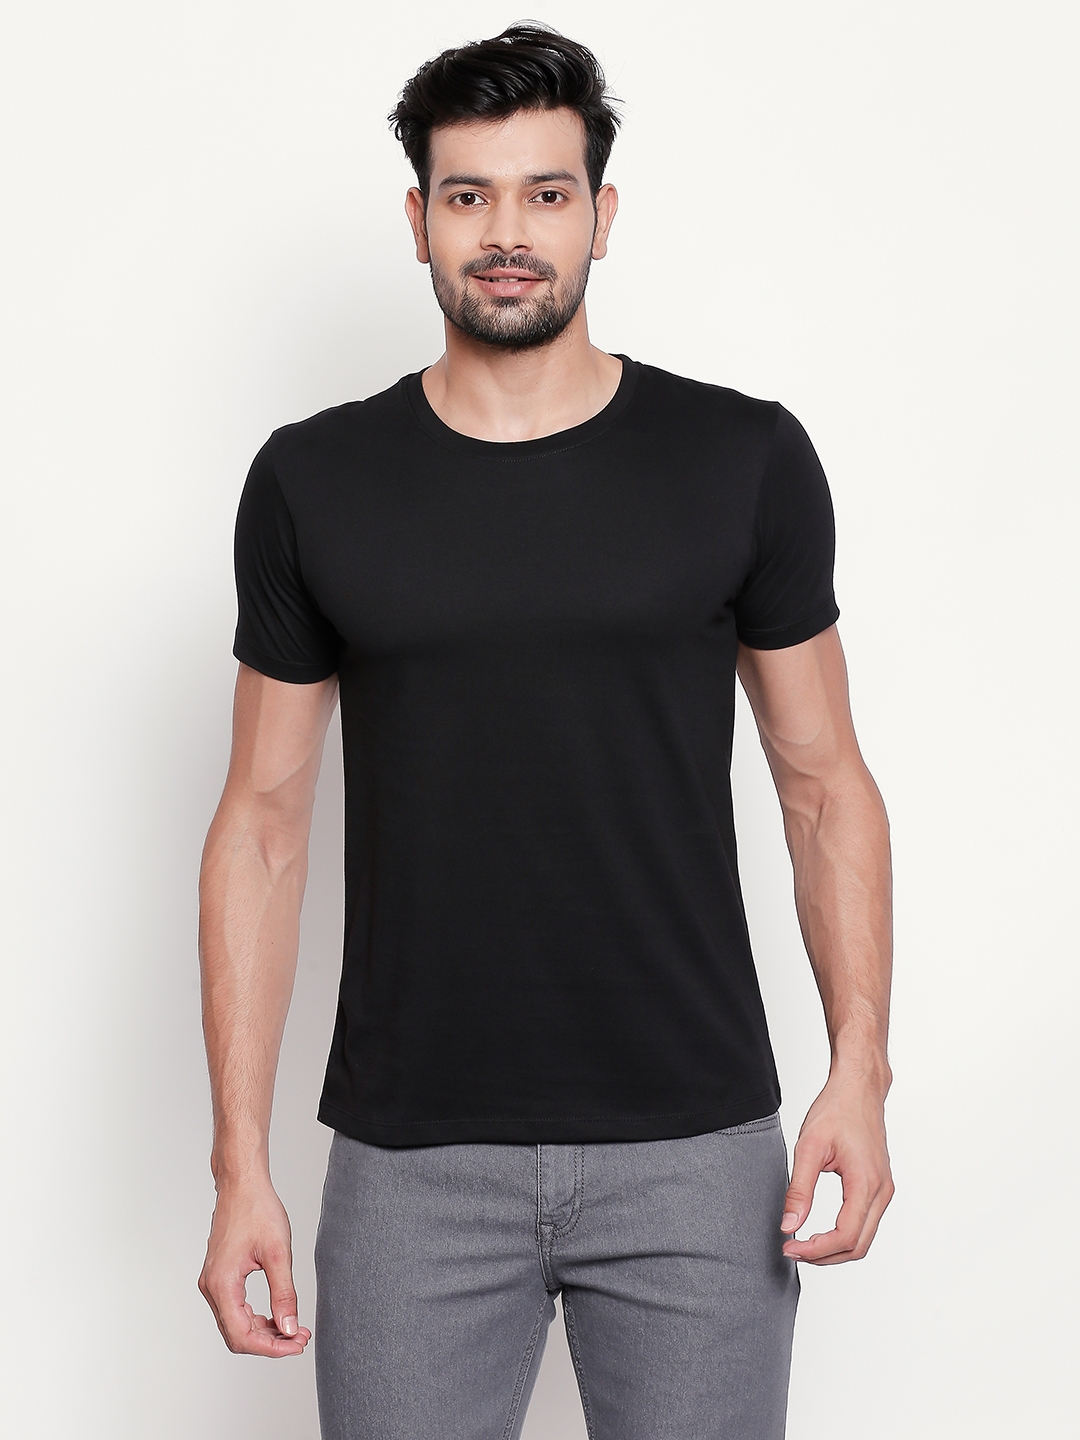 creativeideas.store | Black Plain Tshirt